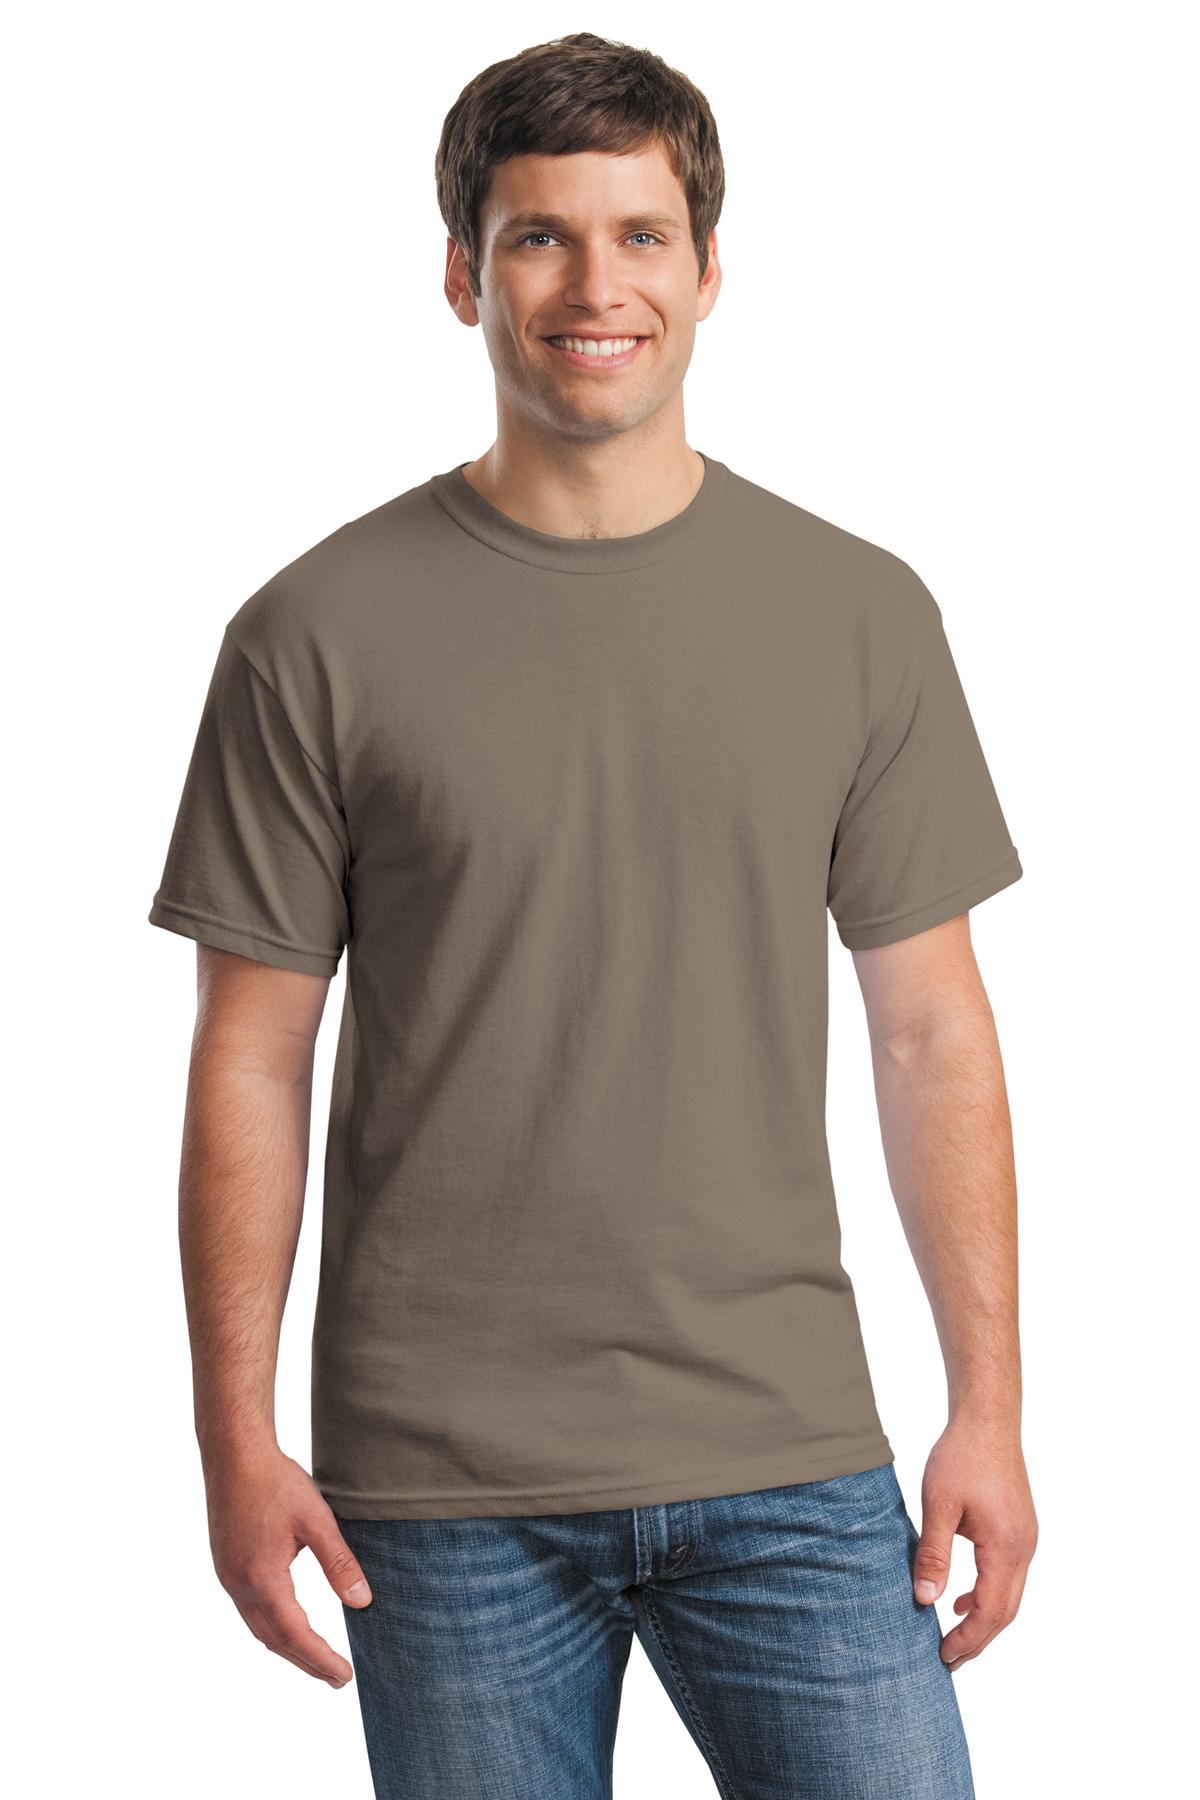 Camiseta de algodón pesado 100% algodón (G500) naranja de seguridad, XL,  Anaranjado Safety